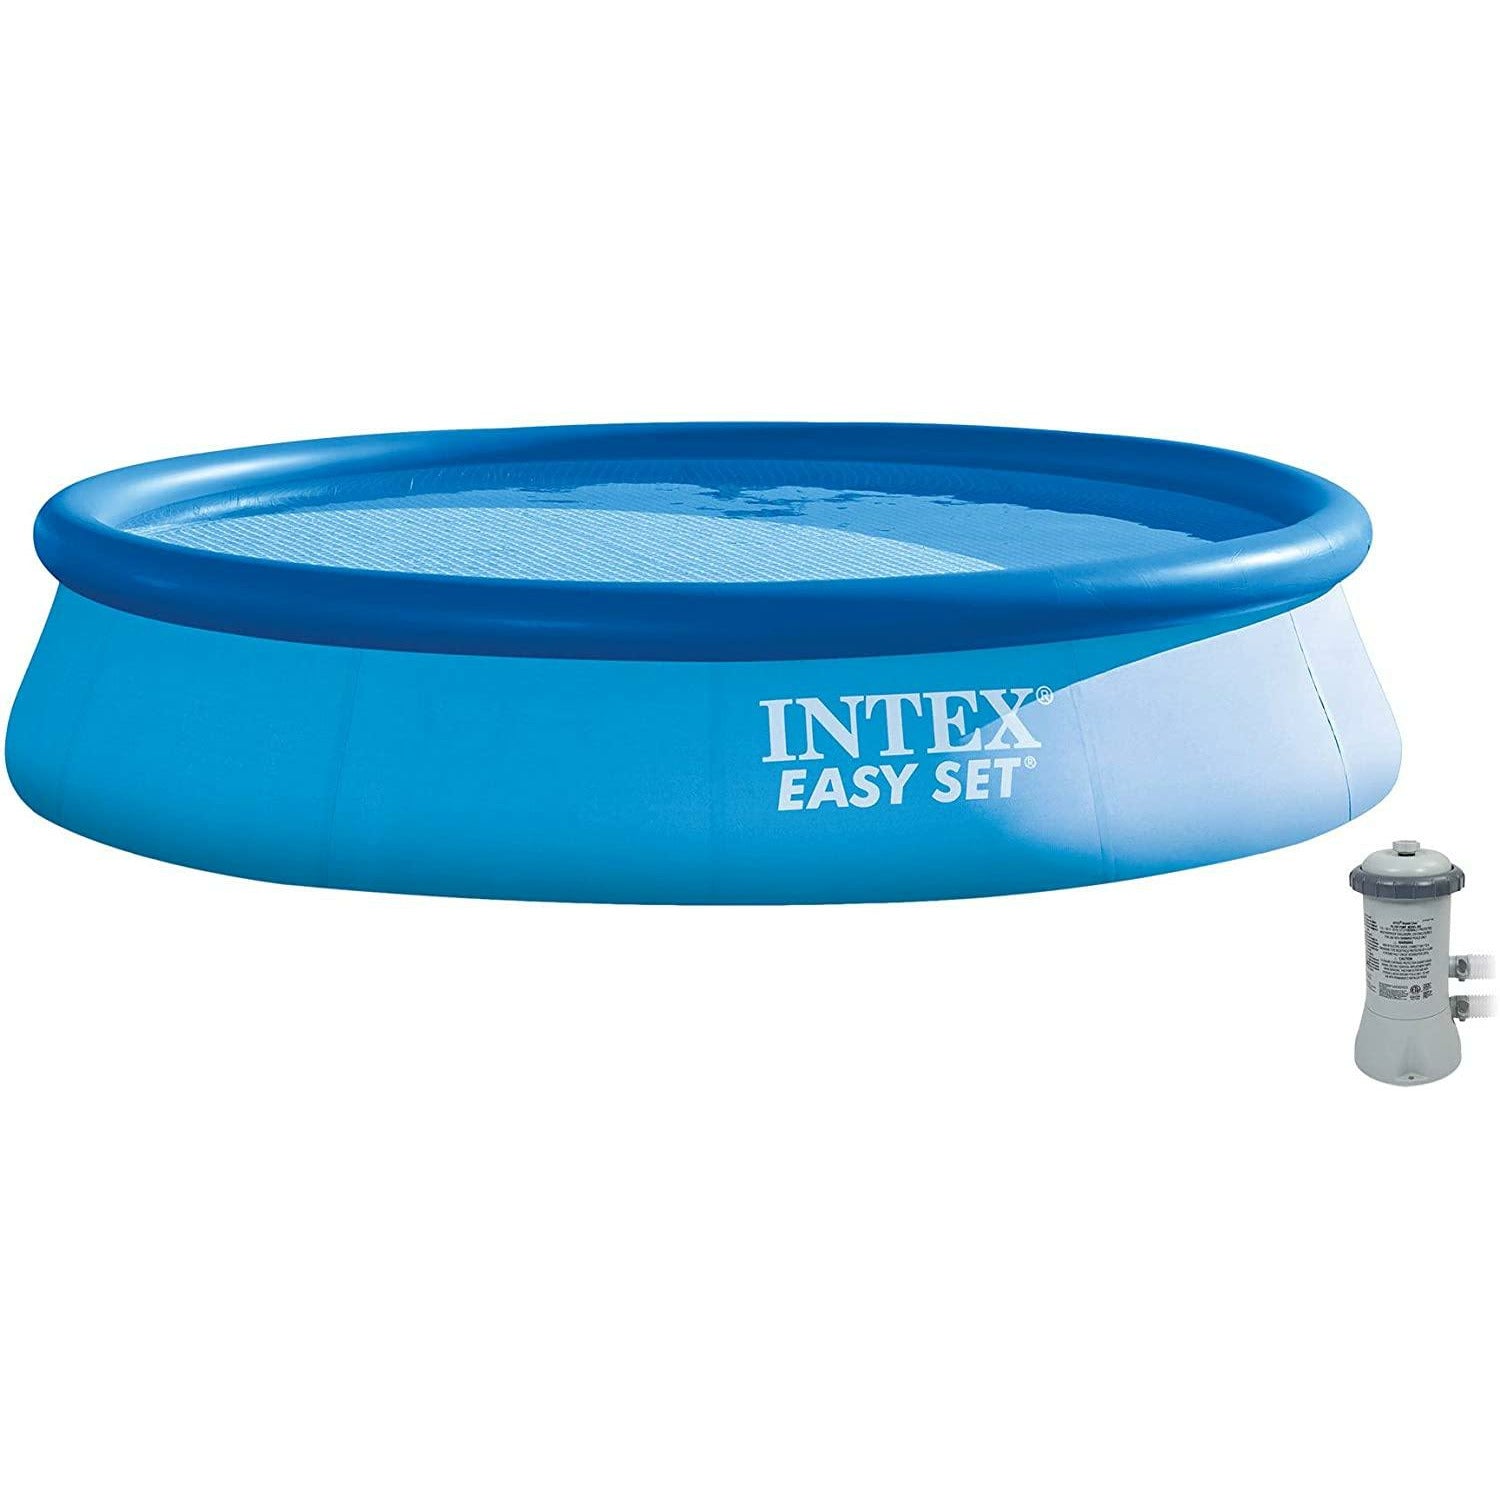 Intex Easy Set Pool 13x33 - Pelican Shops